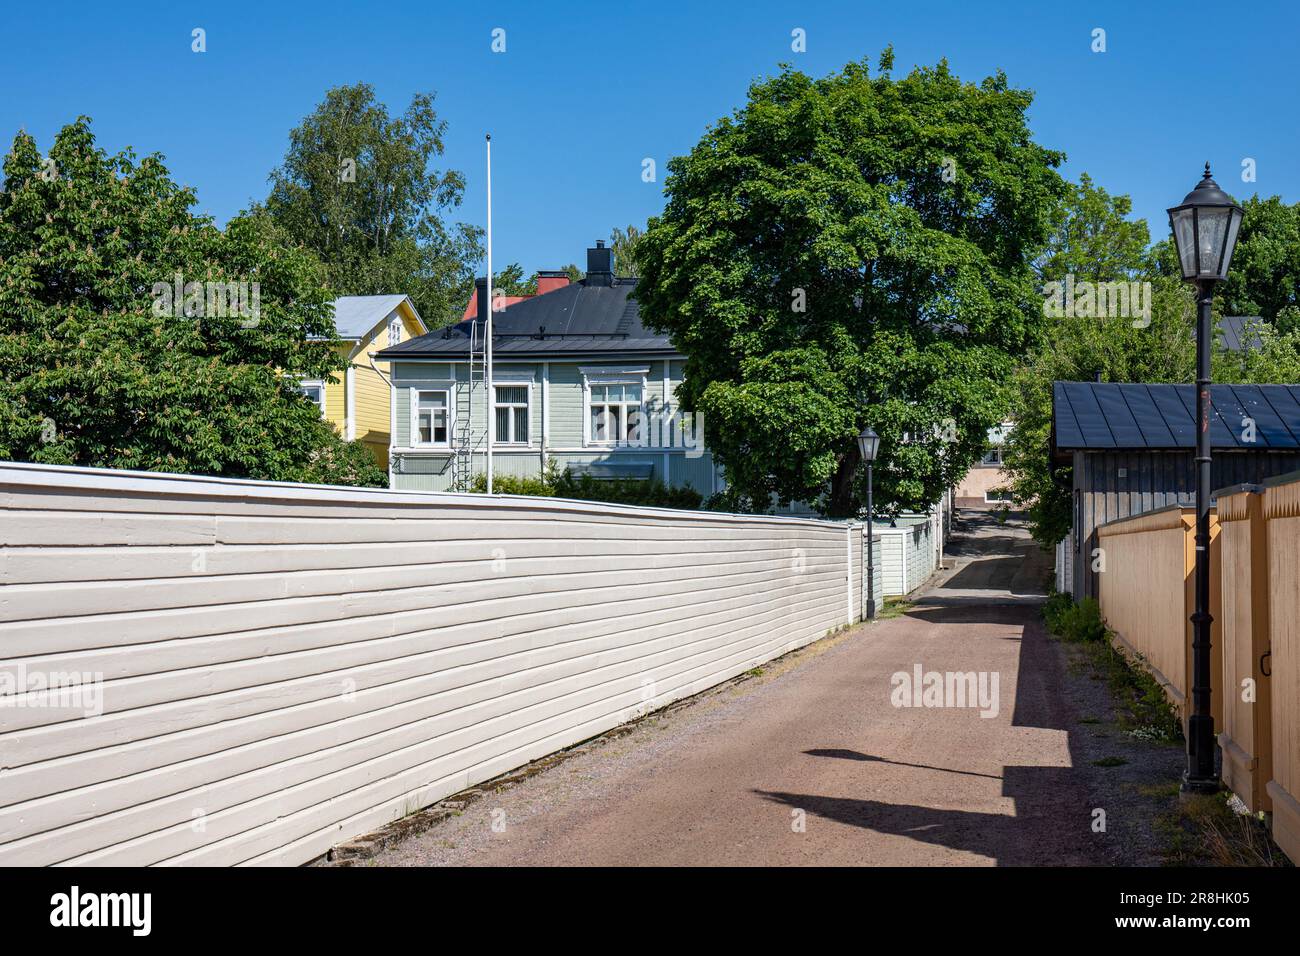 Enge unbefestigte Straße in Barckens udde, der Altstadt von Tammisaari/Ekenäs, Finnland Stockfoto